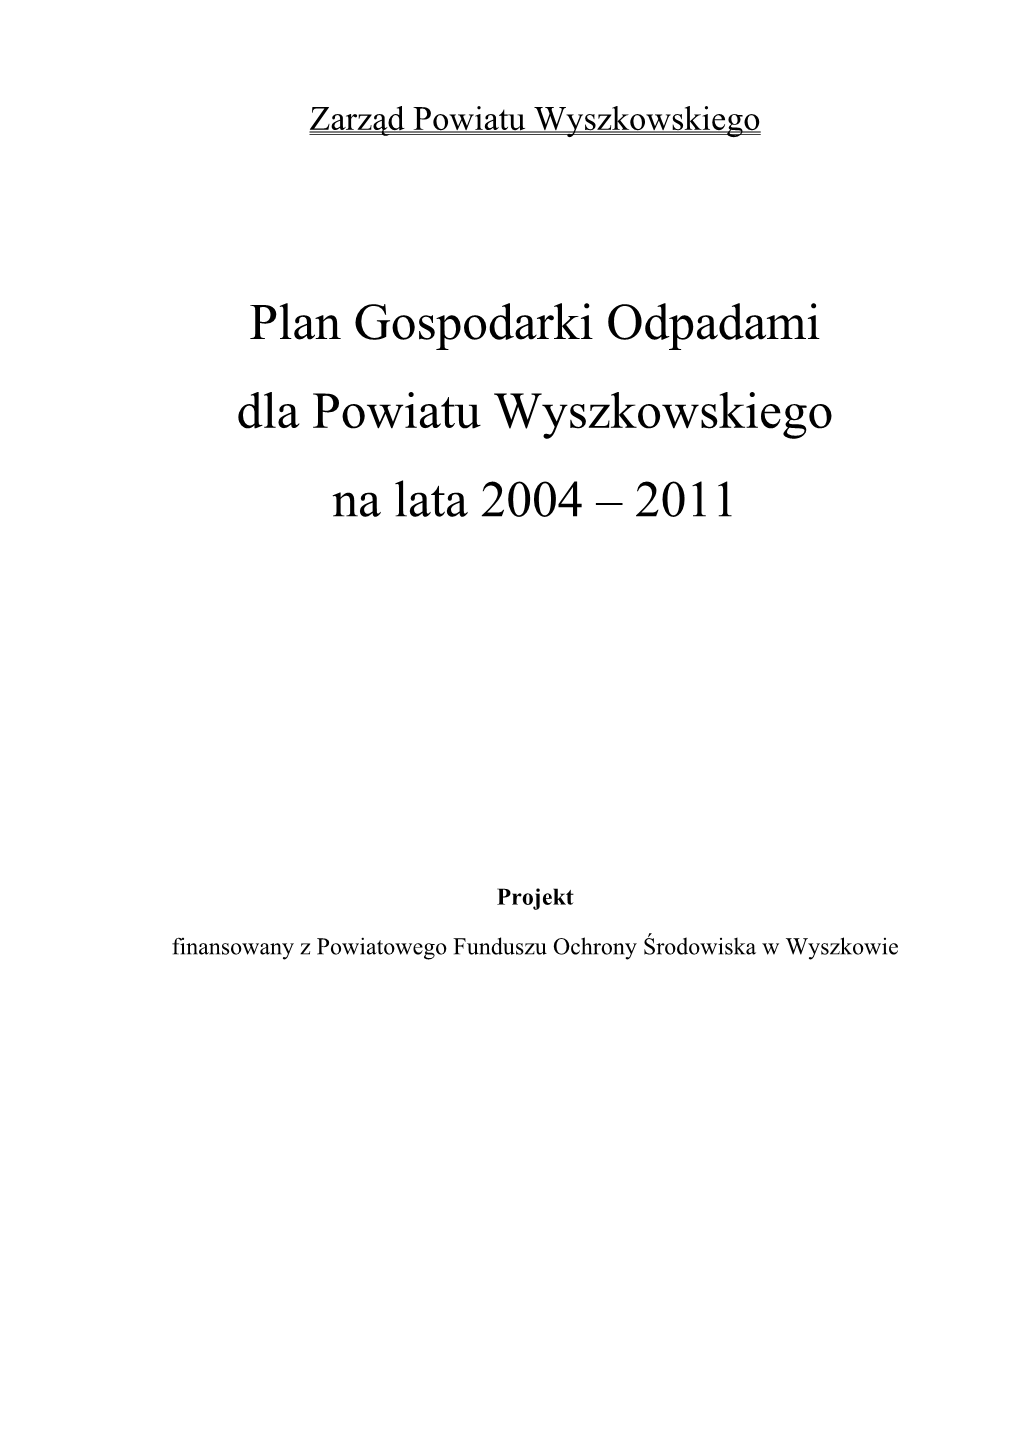 Plan Gospodarki Odpadami Dla Powiatu Wyszkowskiego Na Lata 2004 – 2011